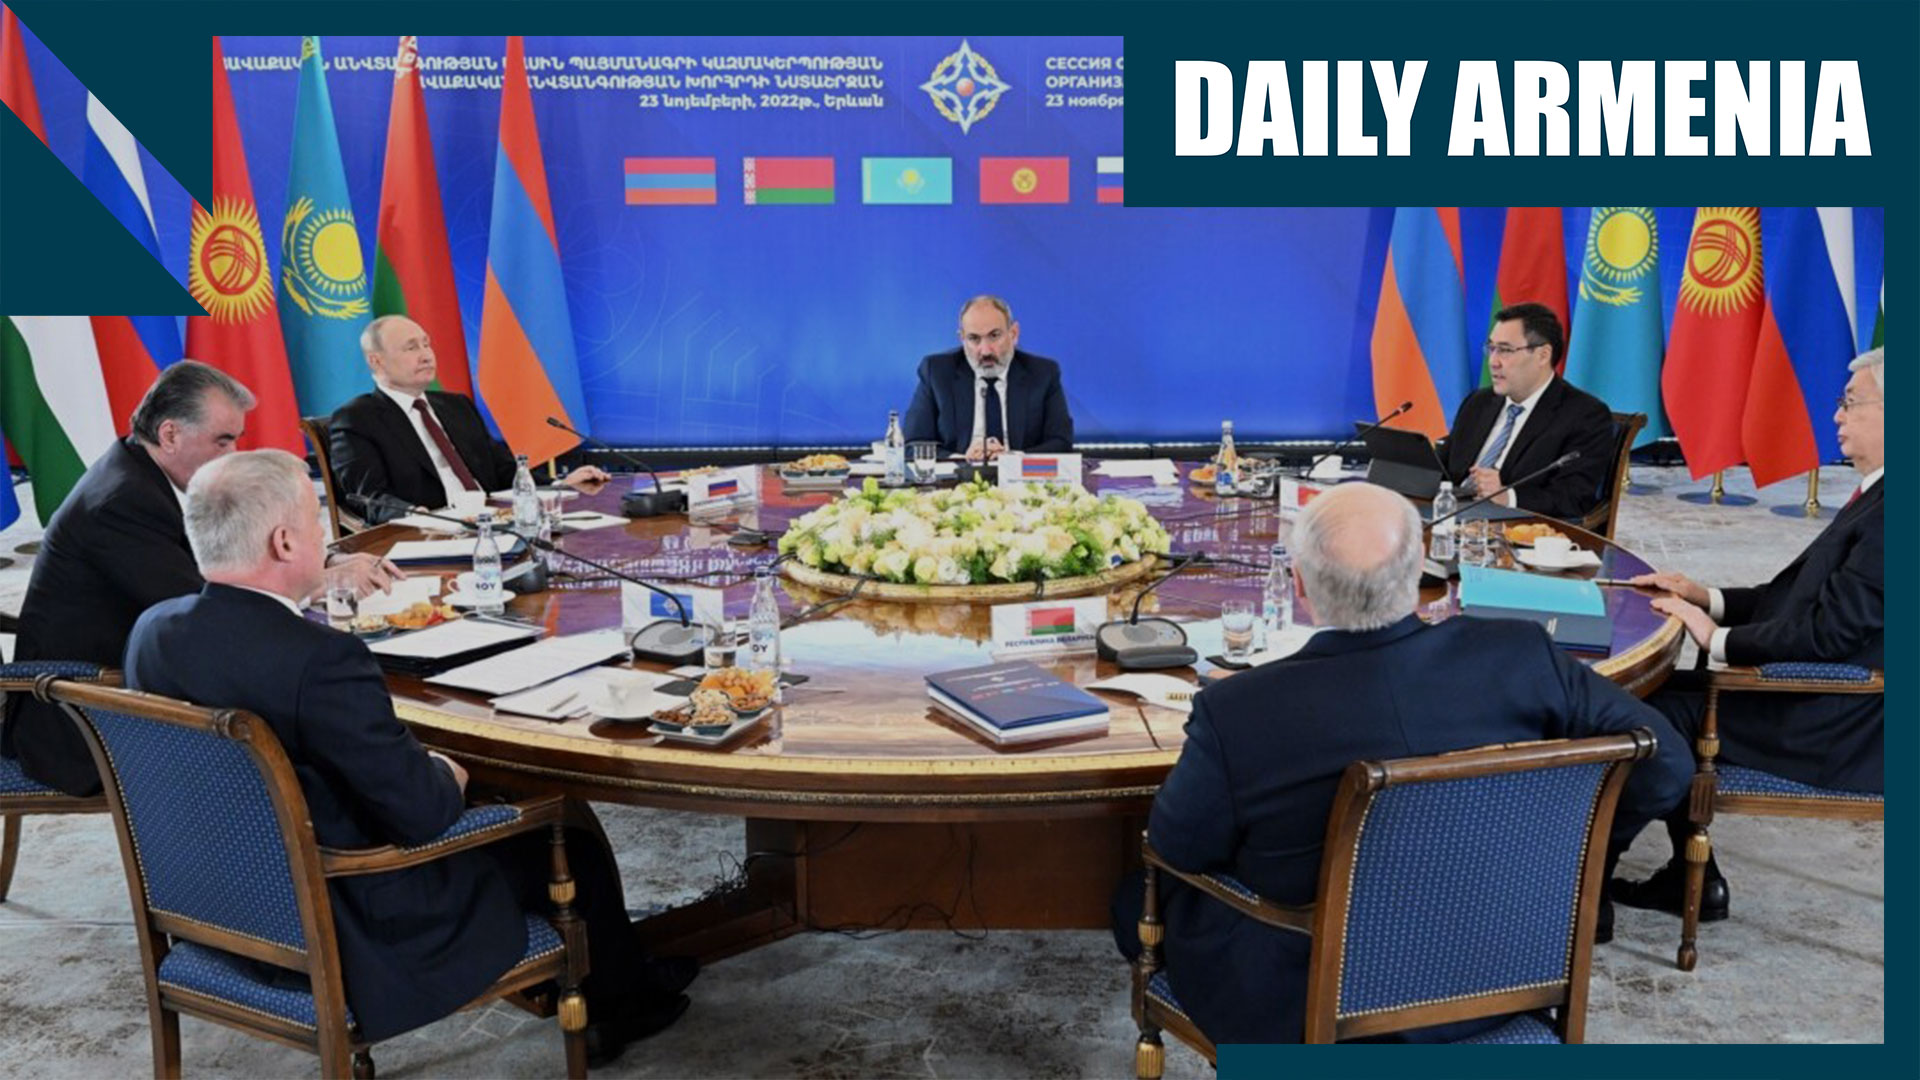 Daily Armenia